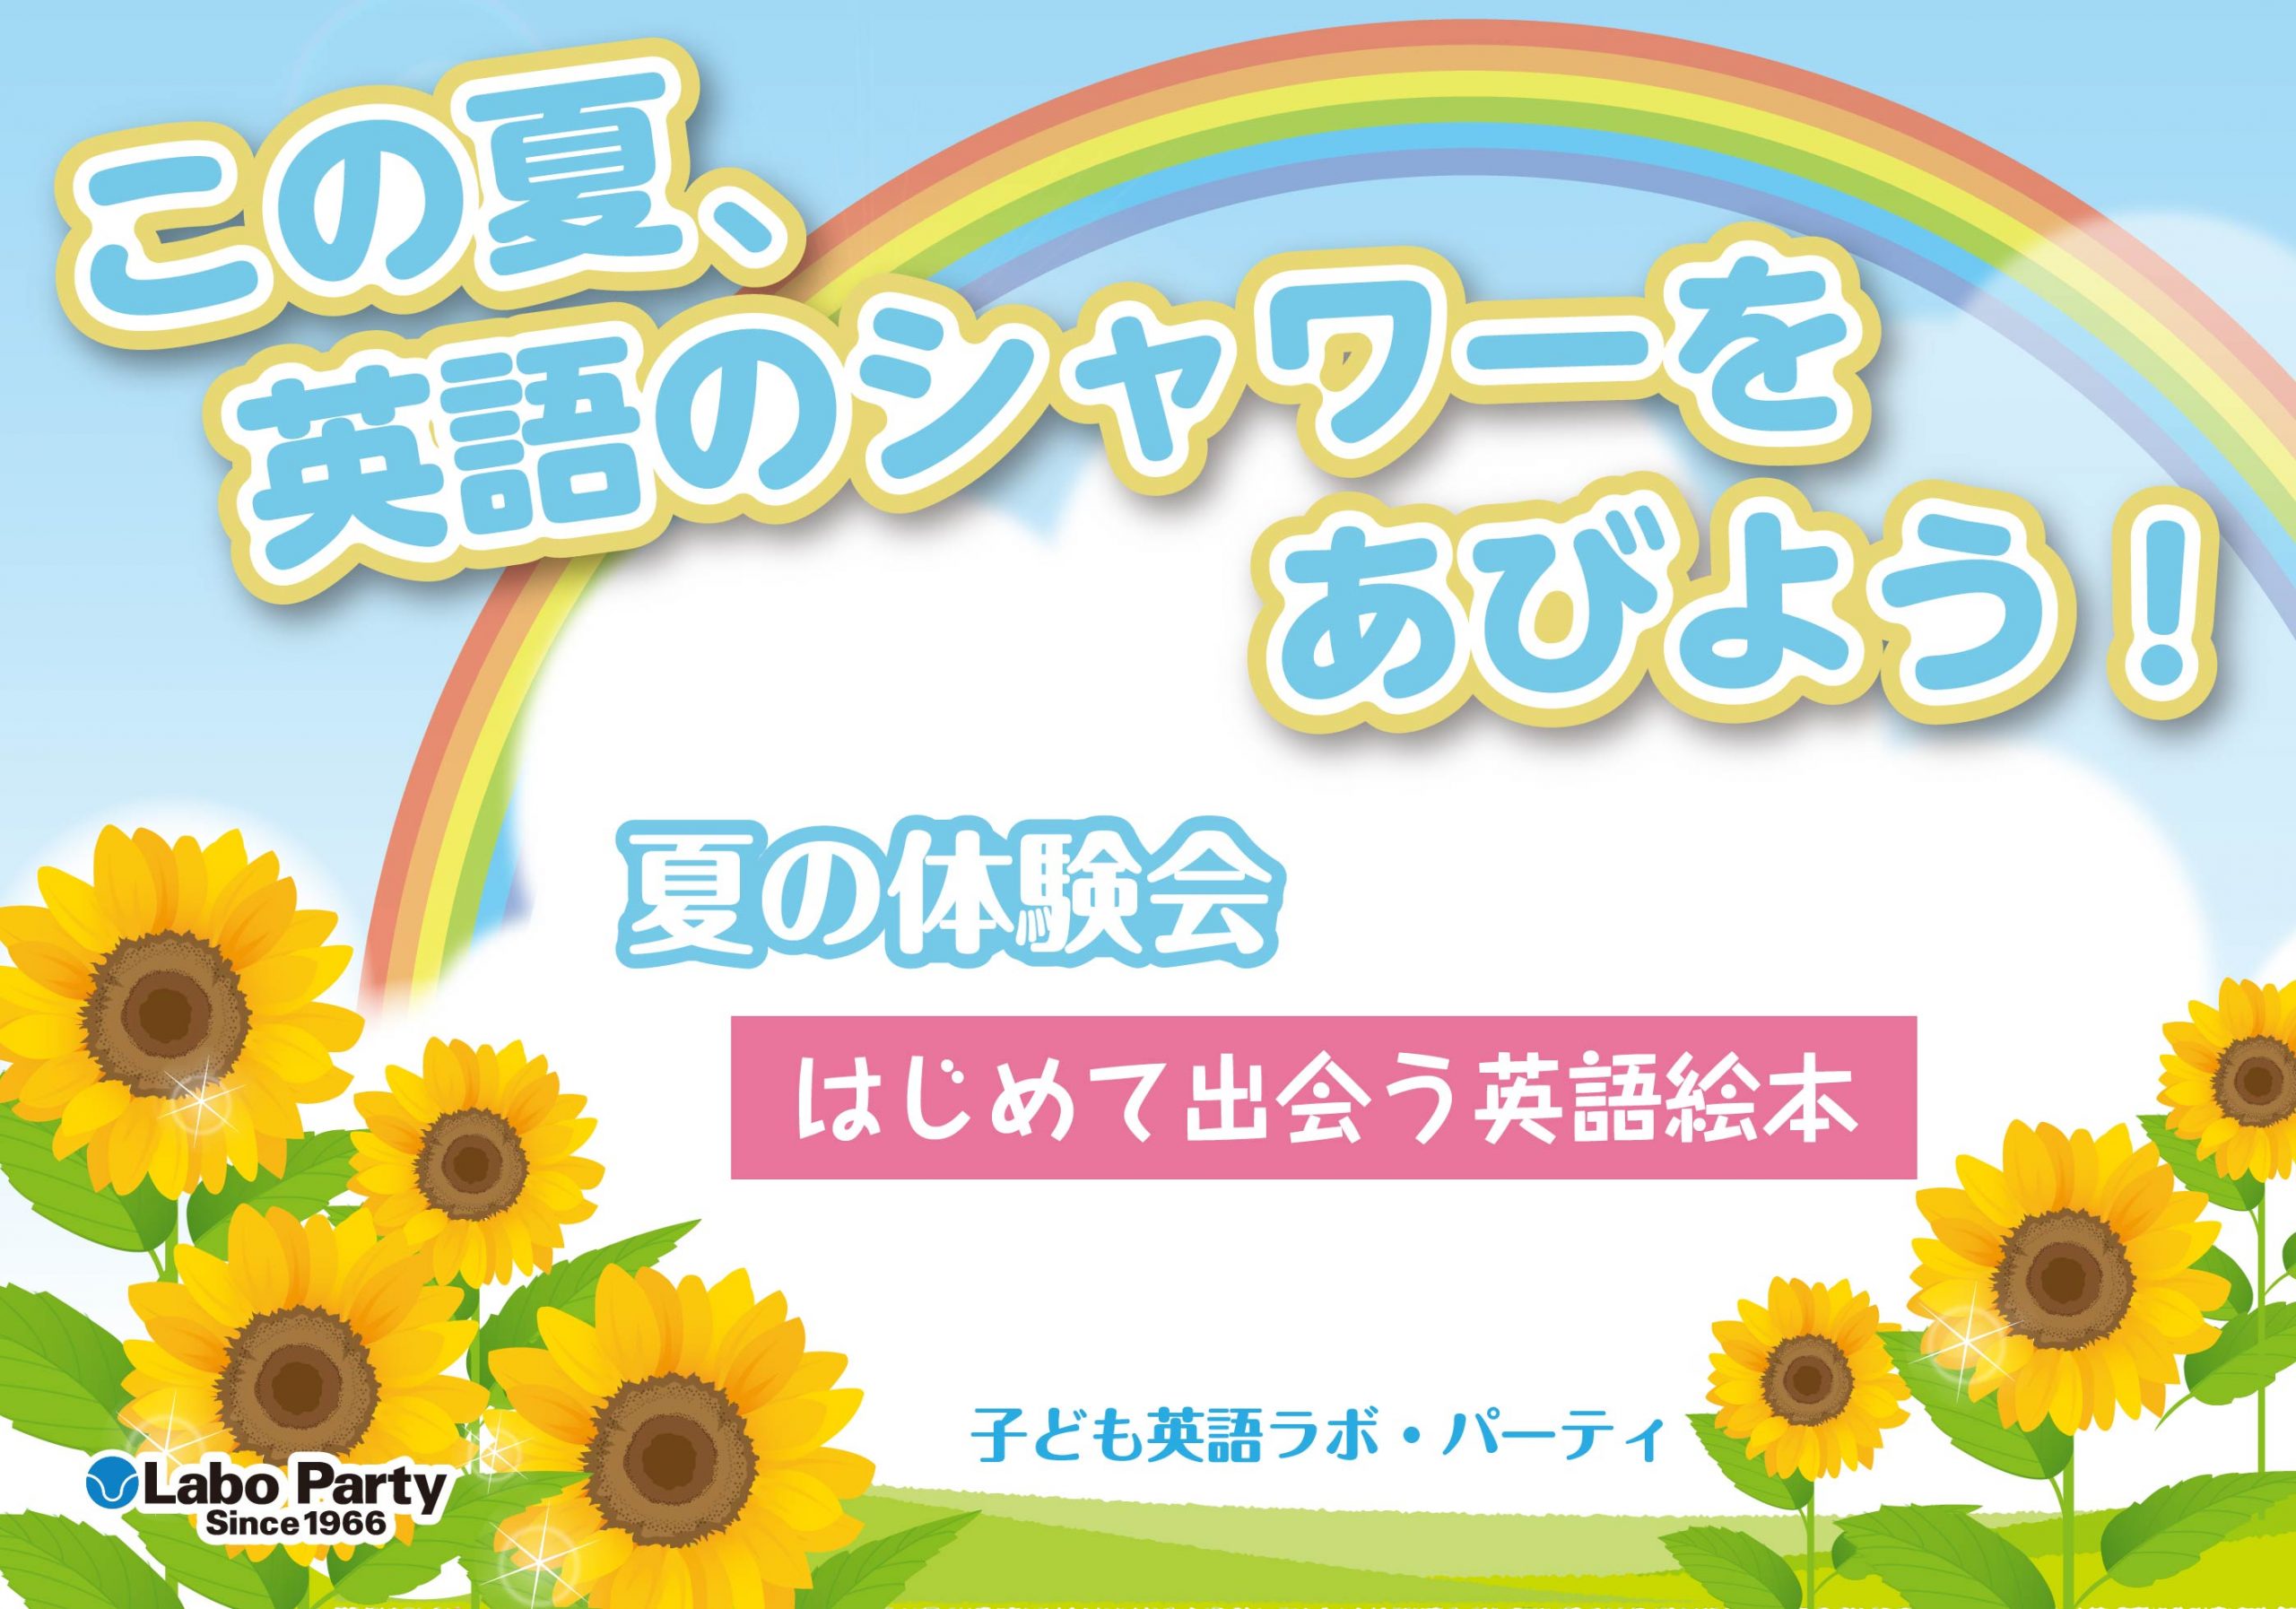 ラボ・パーティ 吉川市きよみ野教室(茂木パーティ)のこの夏、英語のシャワーをあびよう！